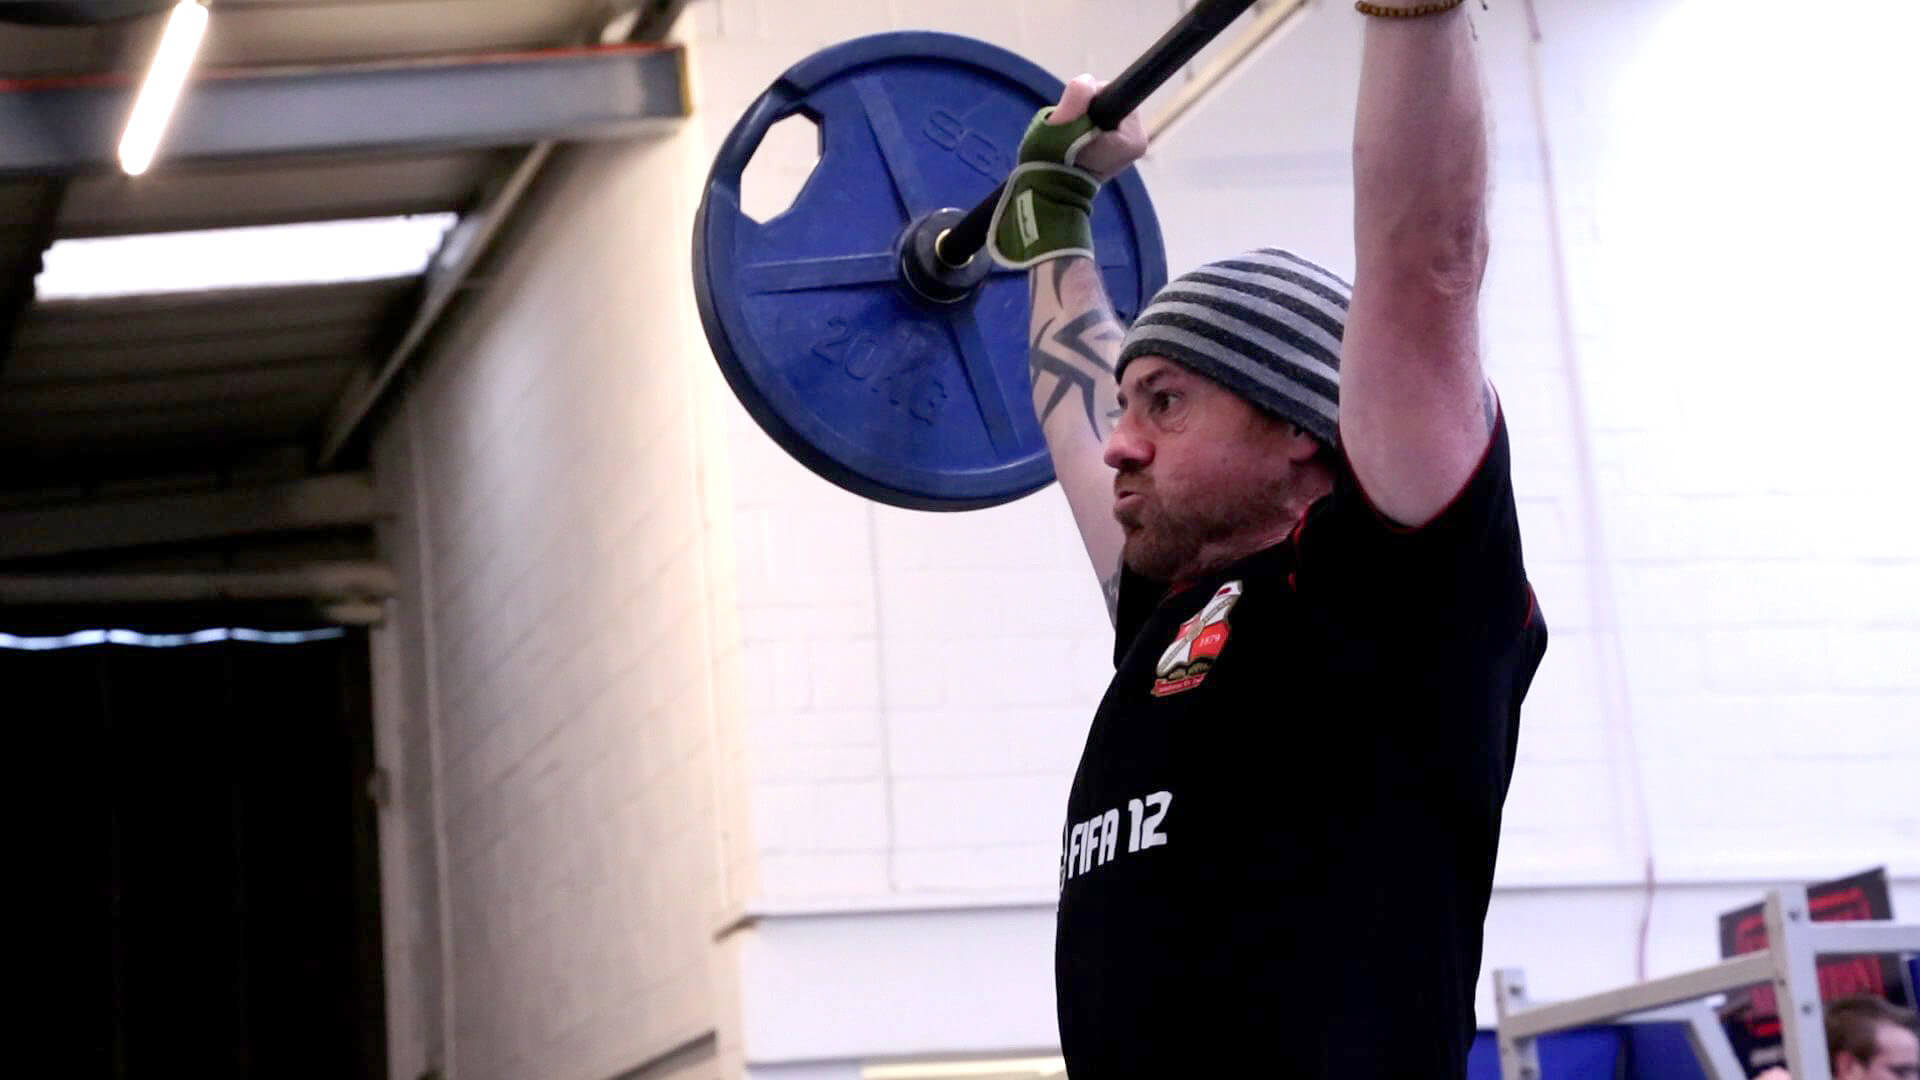 600 SECS Adam Evans weight lift up